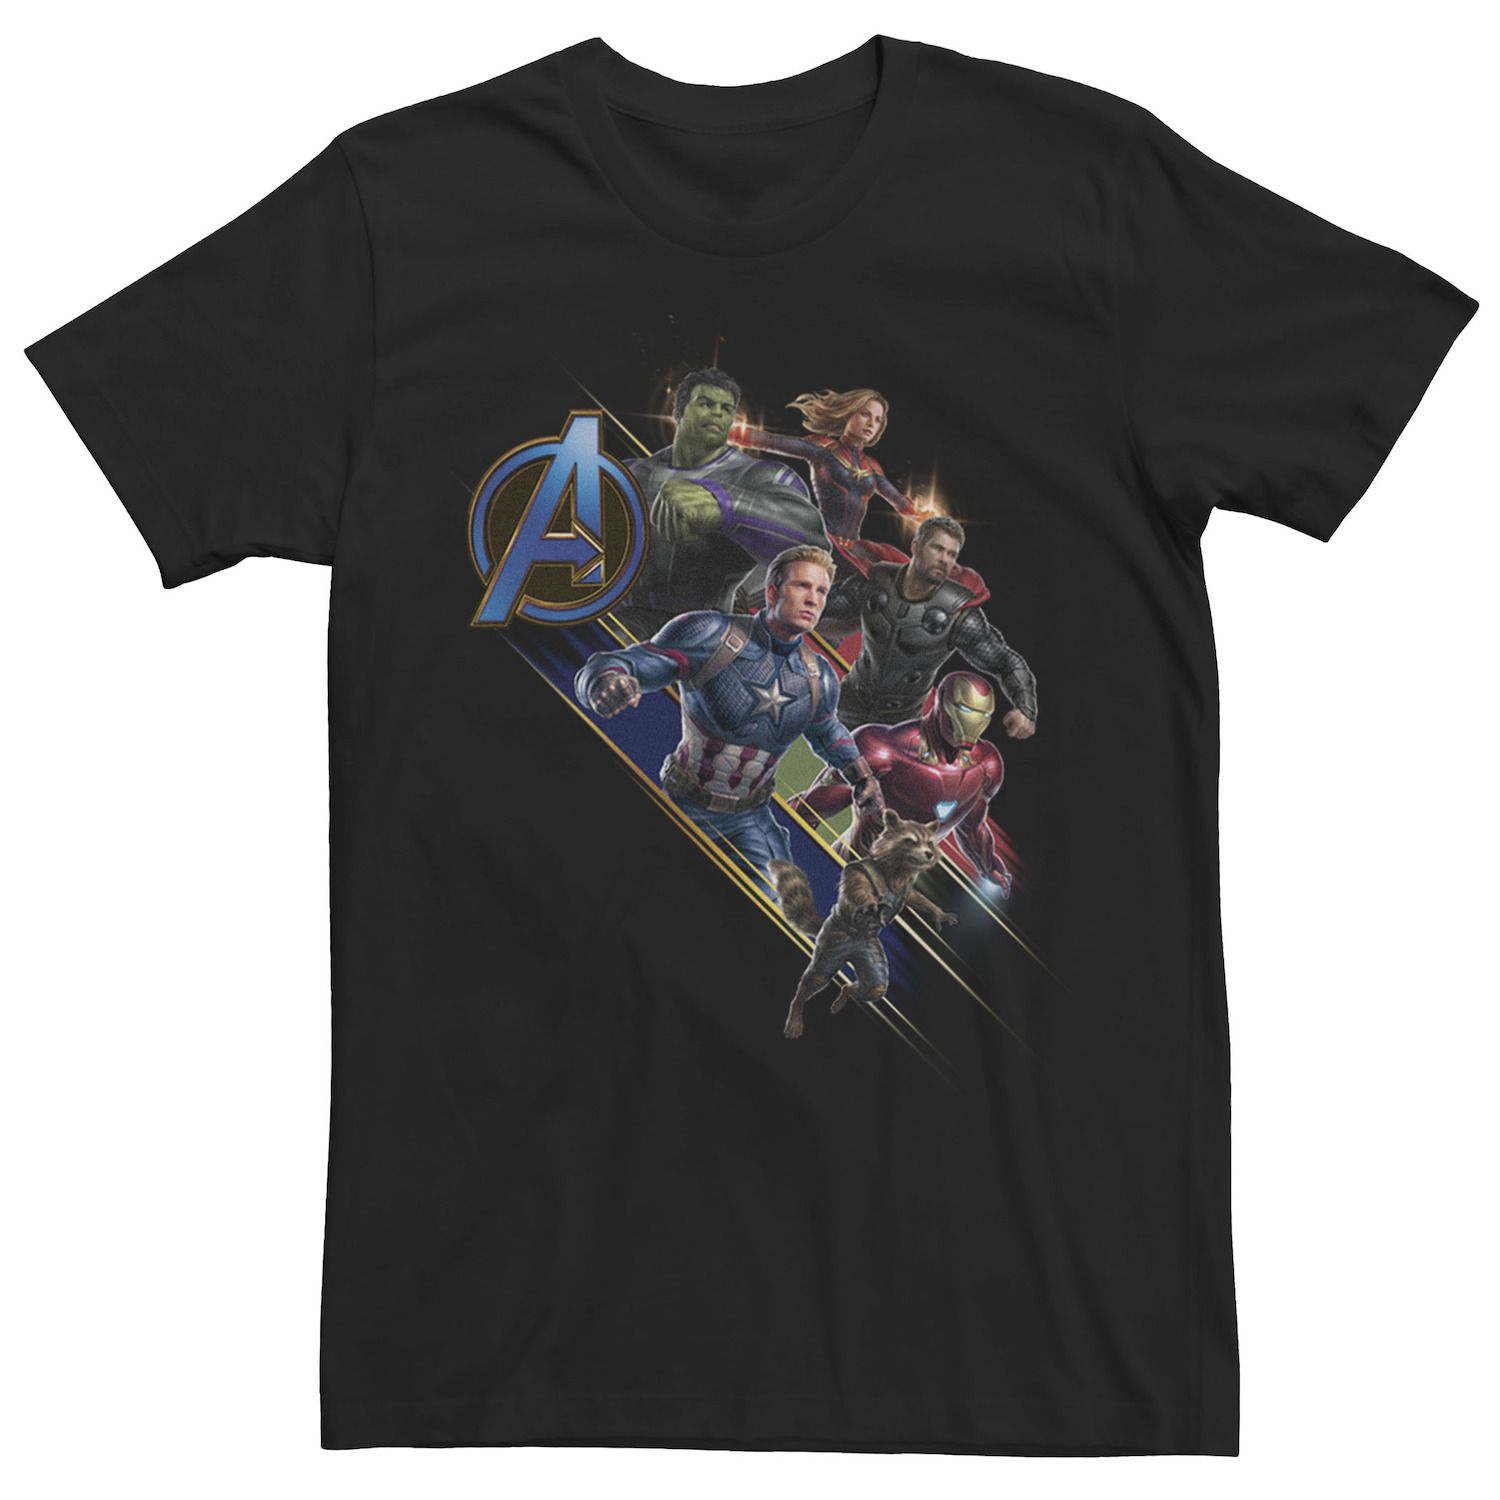 Мужская футболка с логотипом Avengers Endgame Action Pose Marvel, черный 3d постер avengers endgame to action